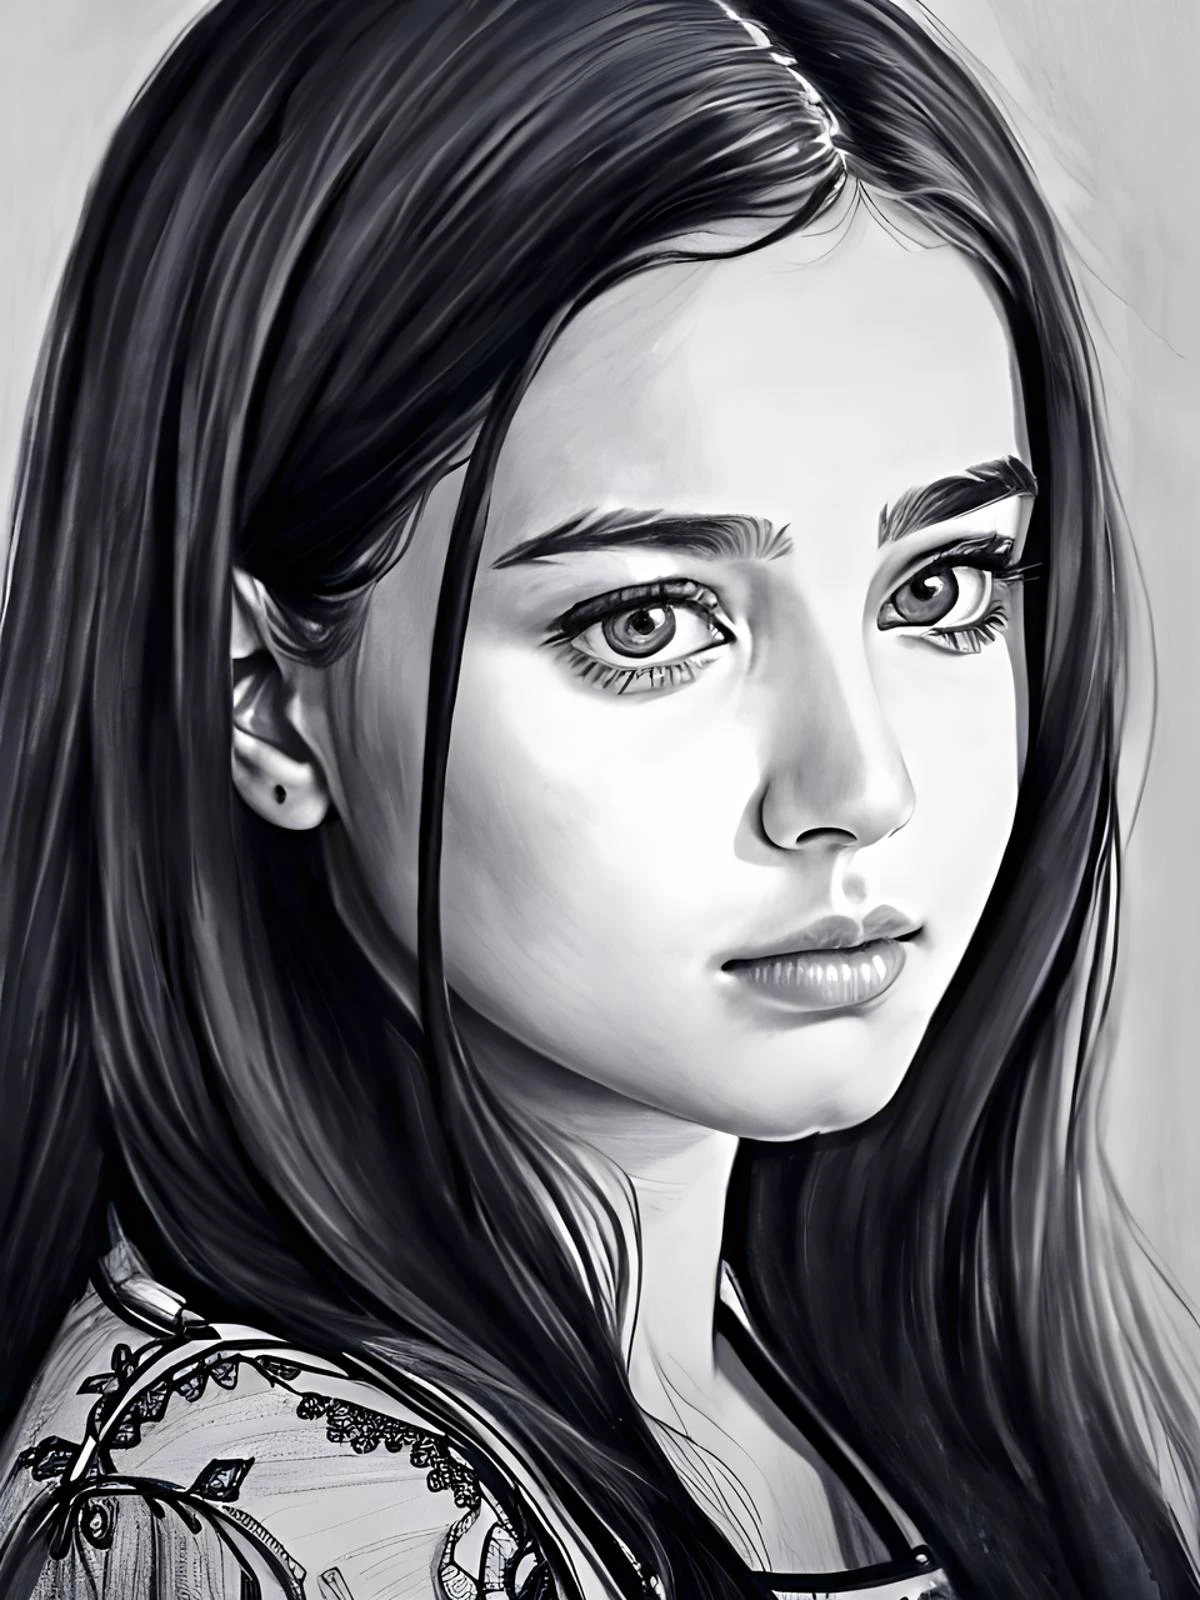 21세 소녀의 초상, 예쁜 얼굴, pencil 스케치, 8K, 뒤얽힌, 최고의 품질, 터무니없는, 연필 그림, 걸작, 높은 디테일, 스케치, 슬픈 표정